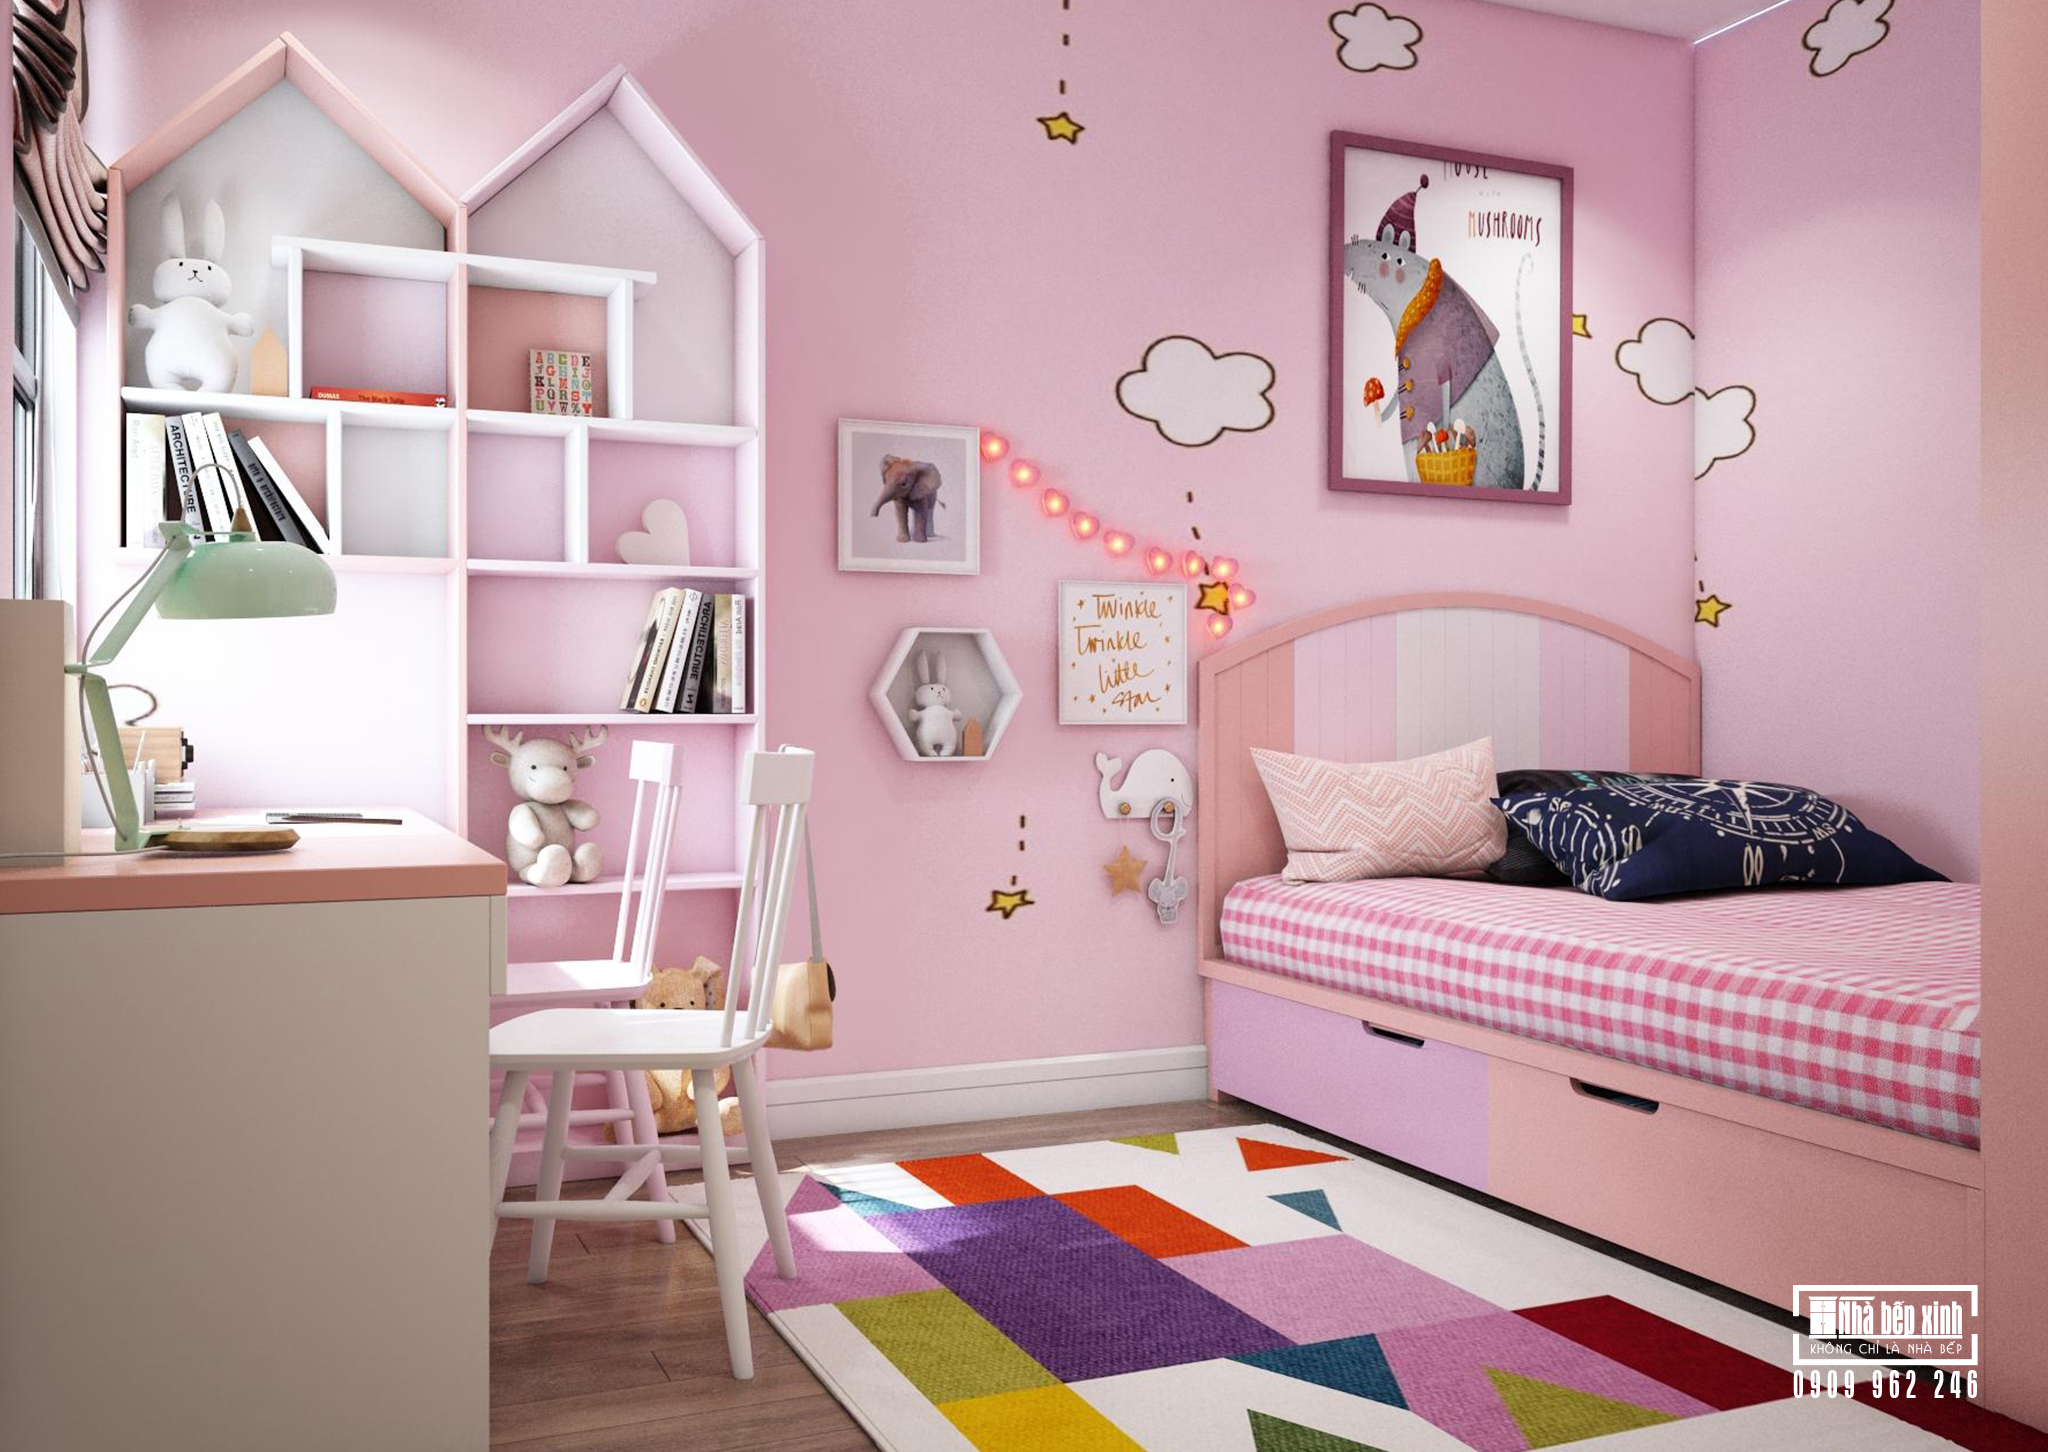 Phòng ngủ bé gái màu hồng tại Emerald Celadon City